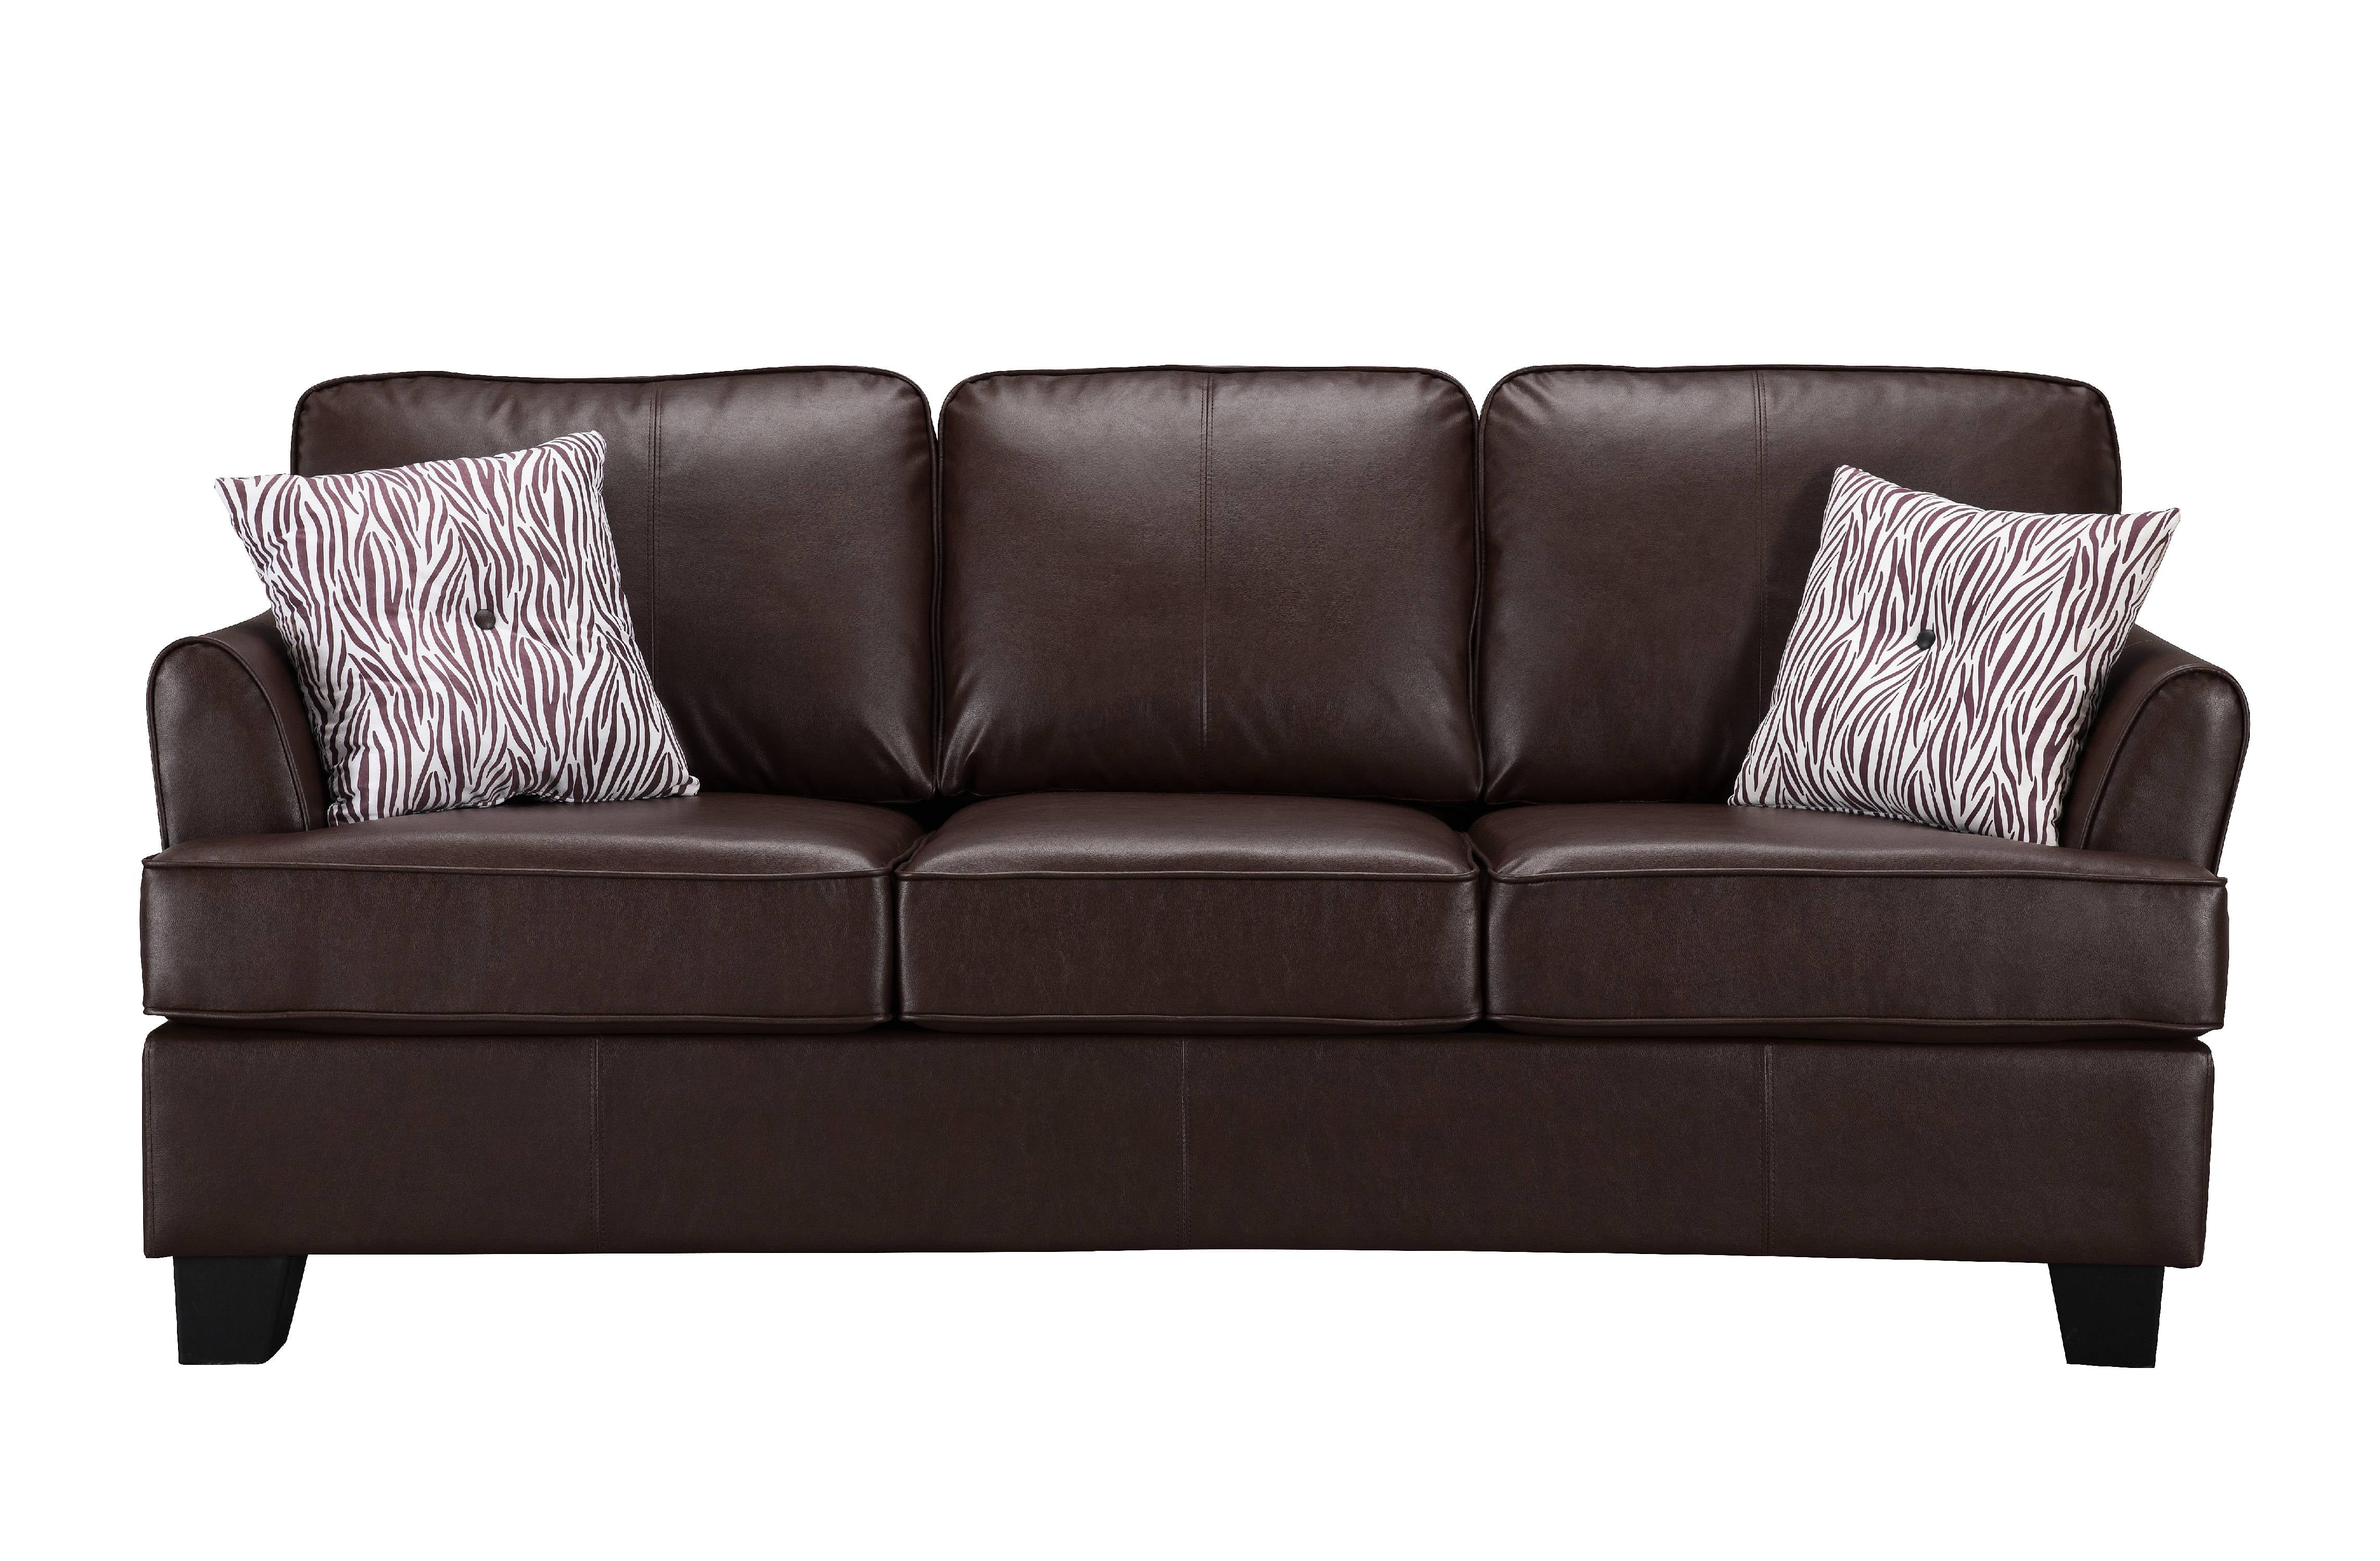 queen size sofa bed walmart